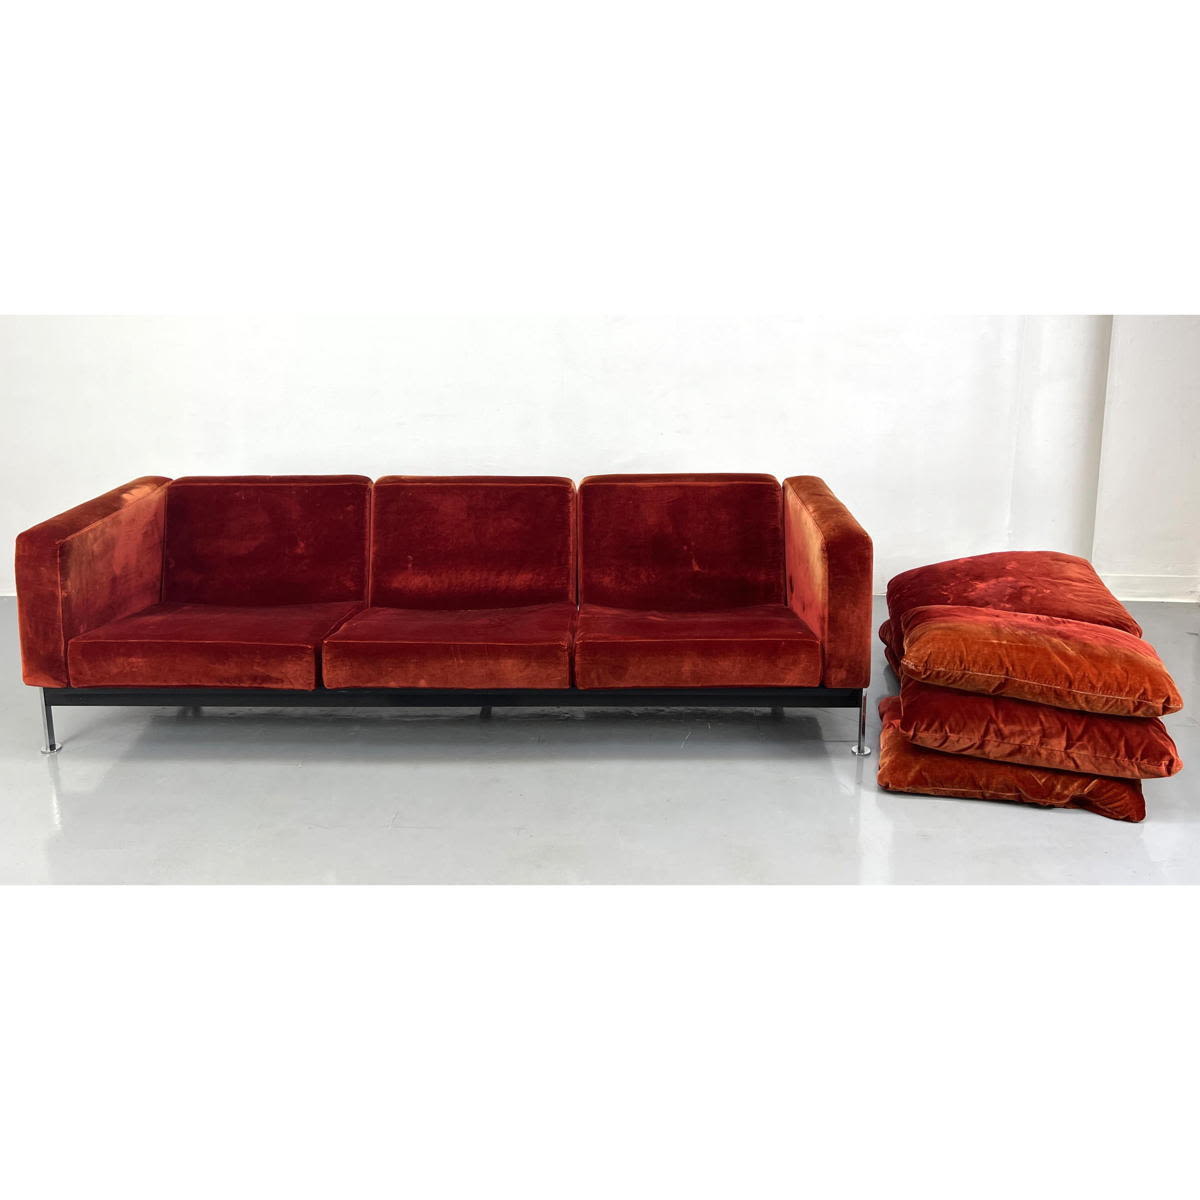 ROBERT HAUSSMANN Sofa Couch Stainless 2a7818